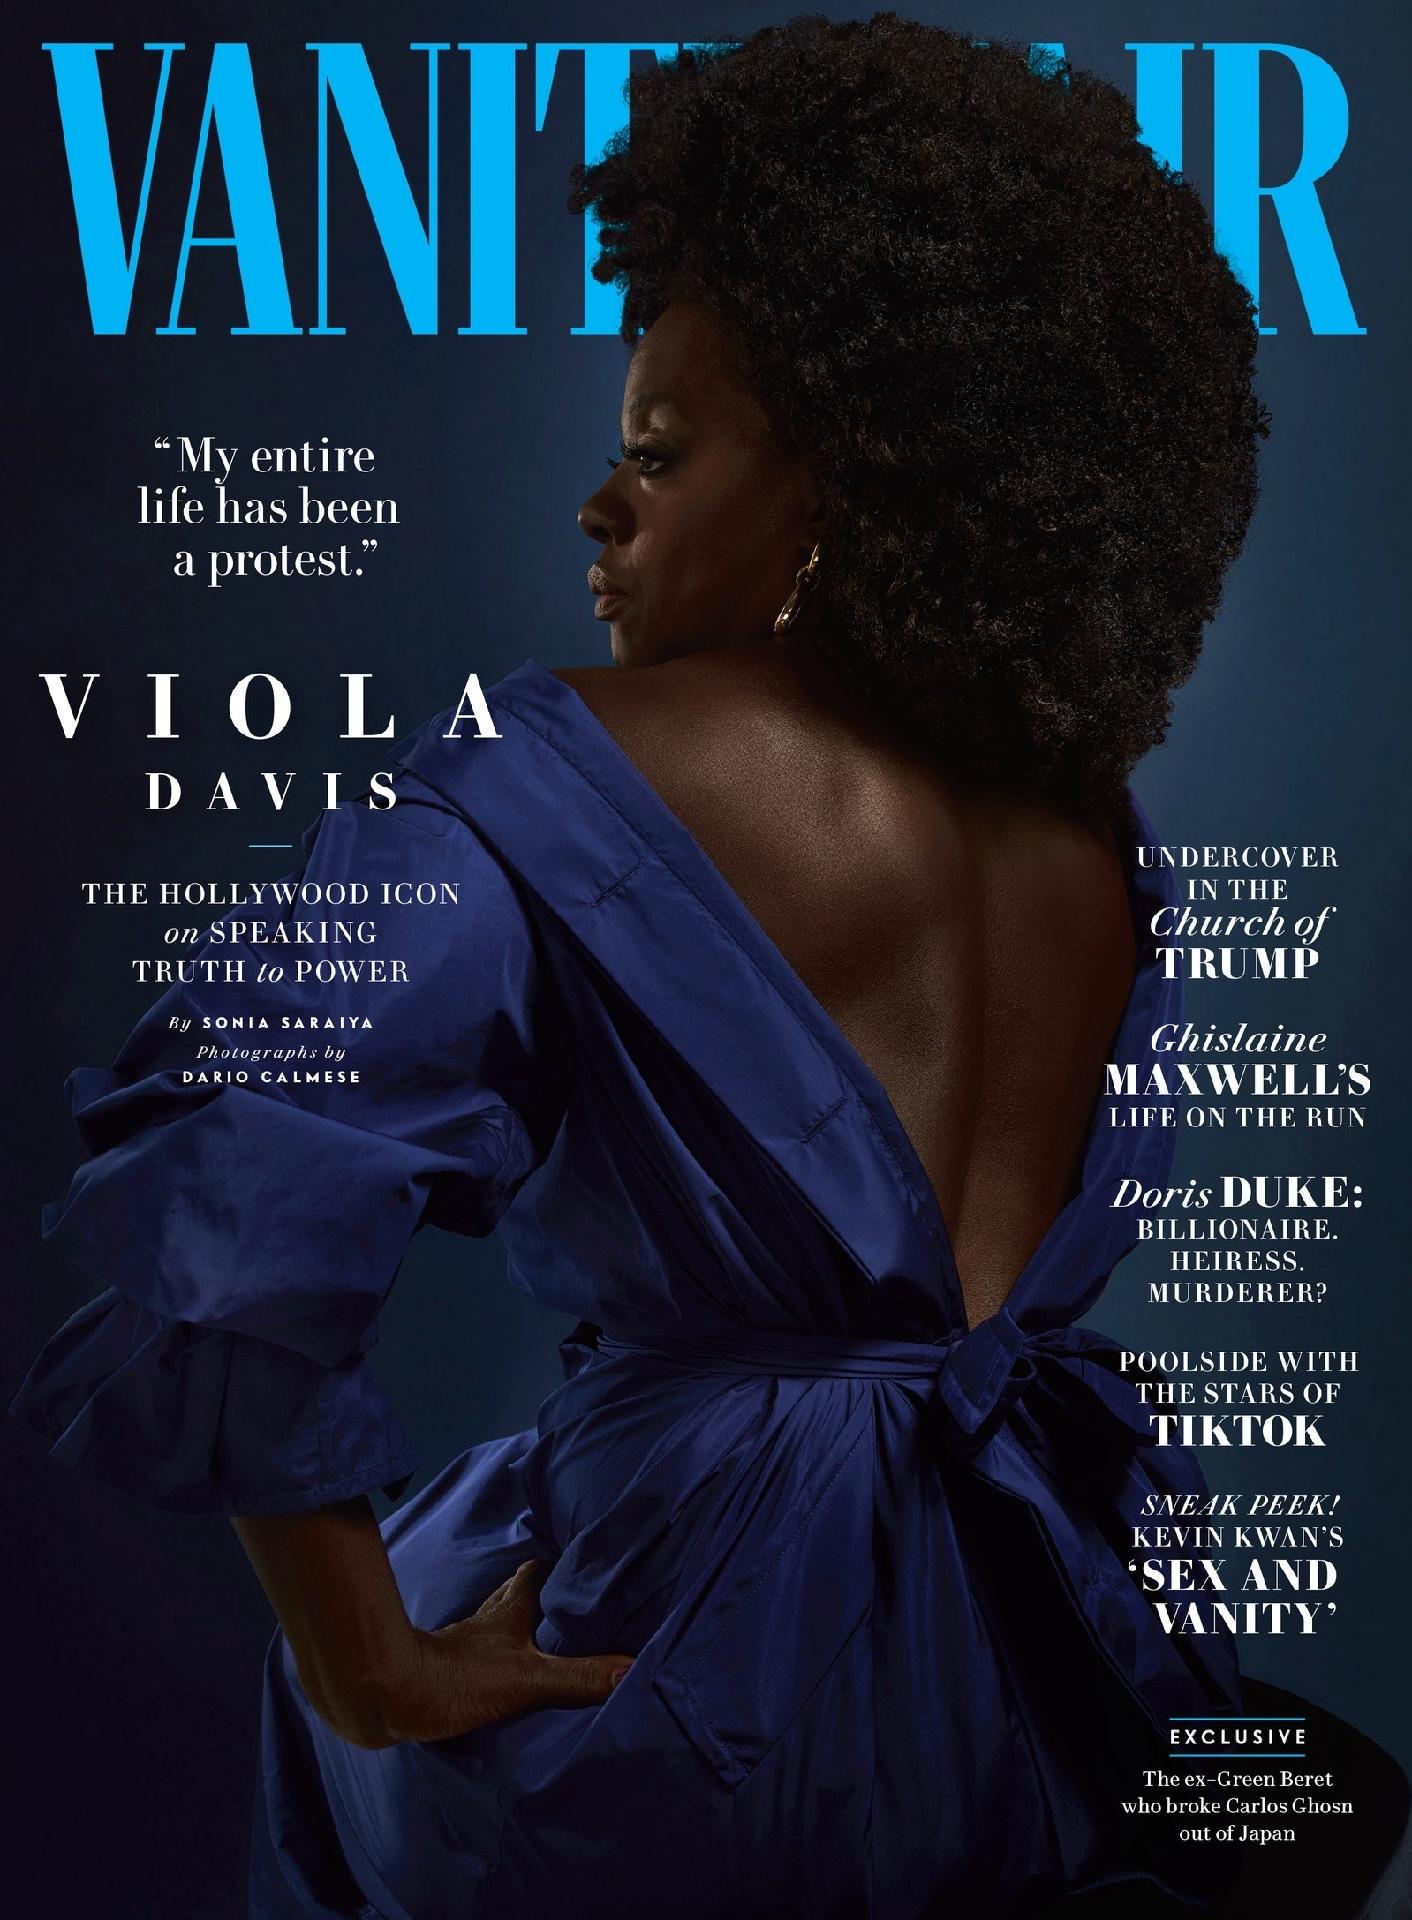 A história de representatividade por trás da Vanity Fair com Viola Davis -  15/07/2020 - UOL Universa